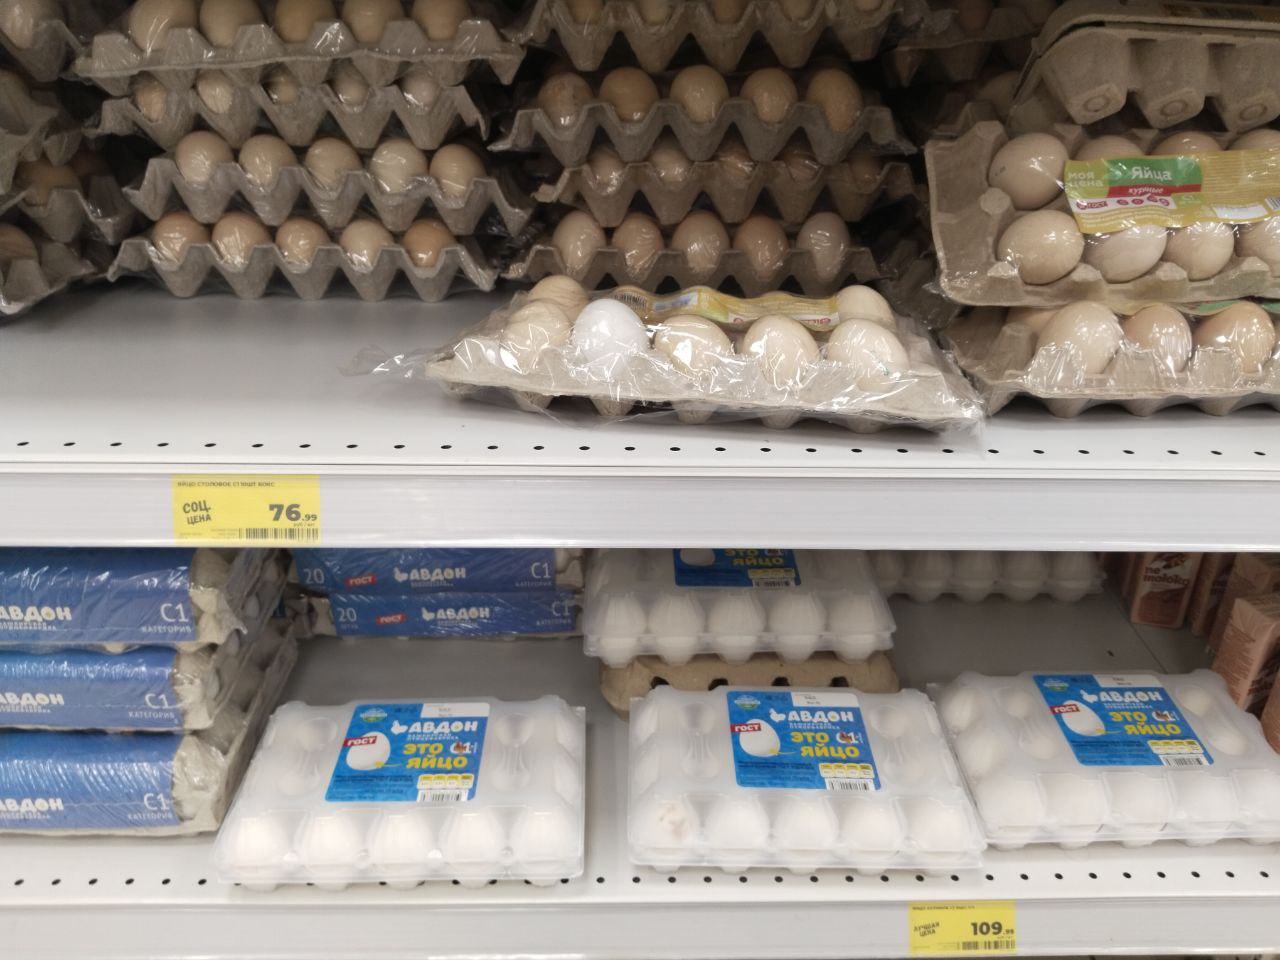 Подорожали ли продукты? Цены на яйца перед Пасхой проверили в магазинах Магнитогорска